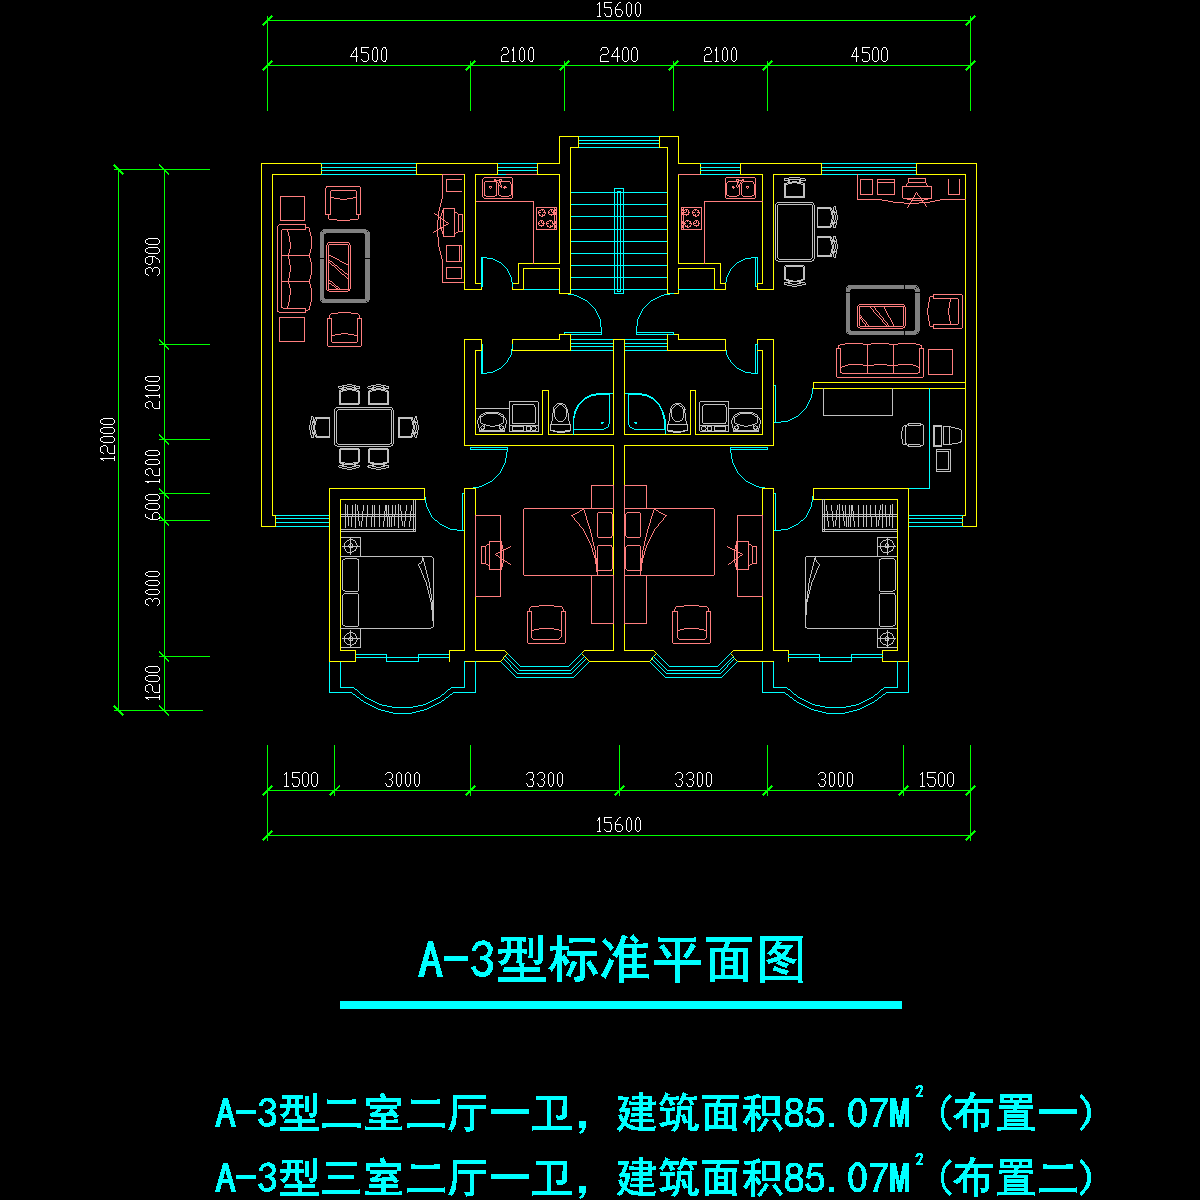 板式多层一梯二户二室二厅一卫、三室二厅一卫户型CAD图纸 - 1